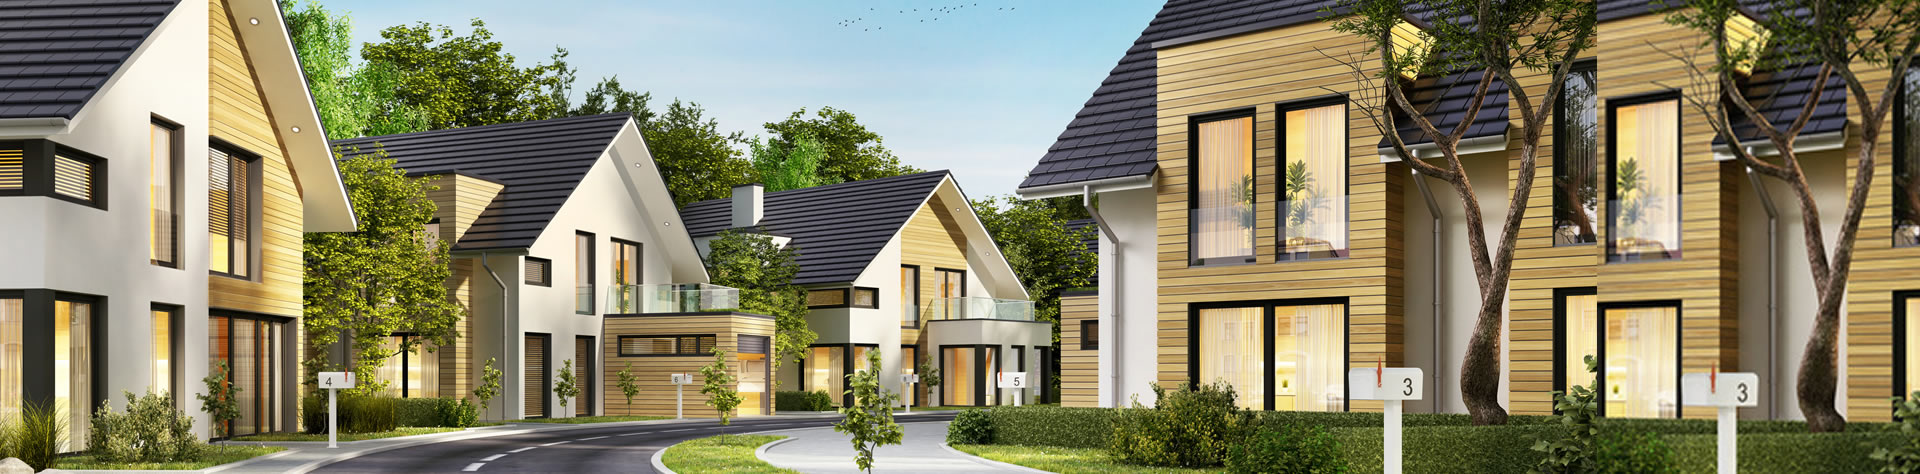 Kostenlose Immobilienbewertung und Erstberatung bei Hausverkauf im Raum Bautzen